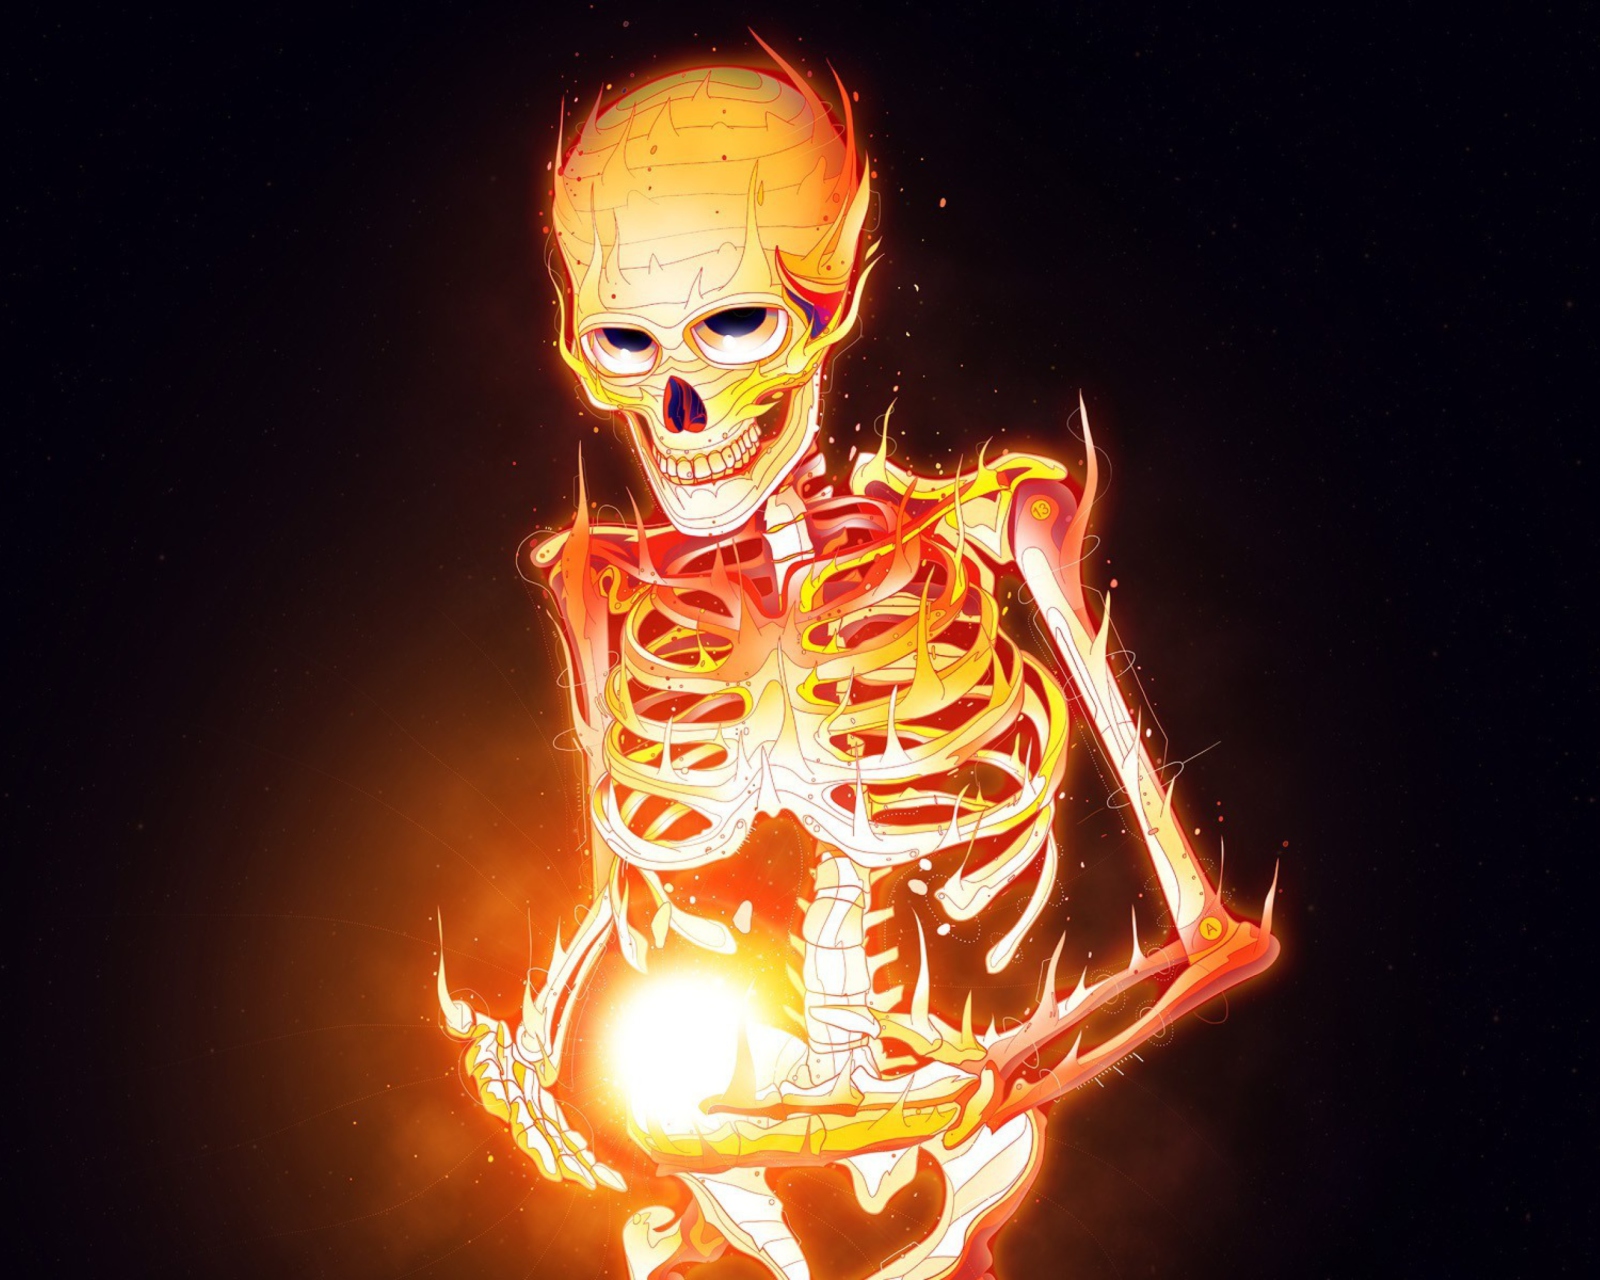 Обои Skeleton On Fire 1600x1280